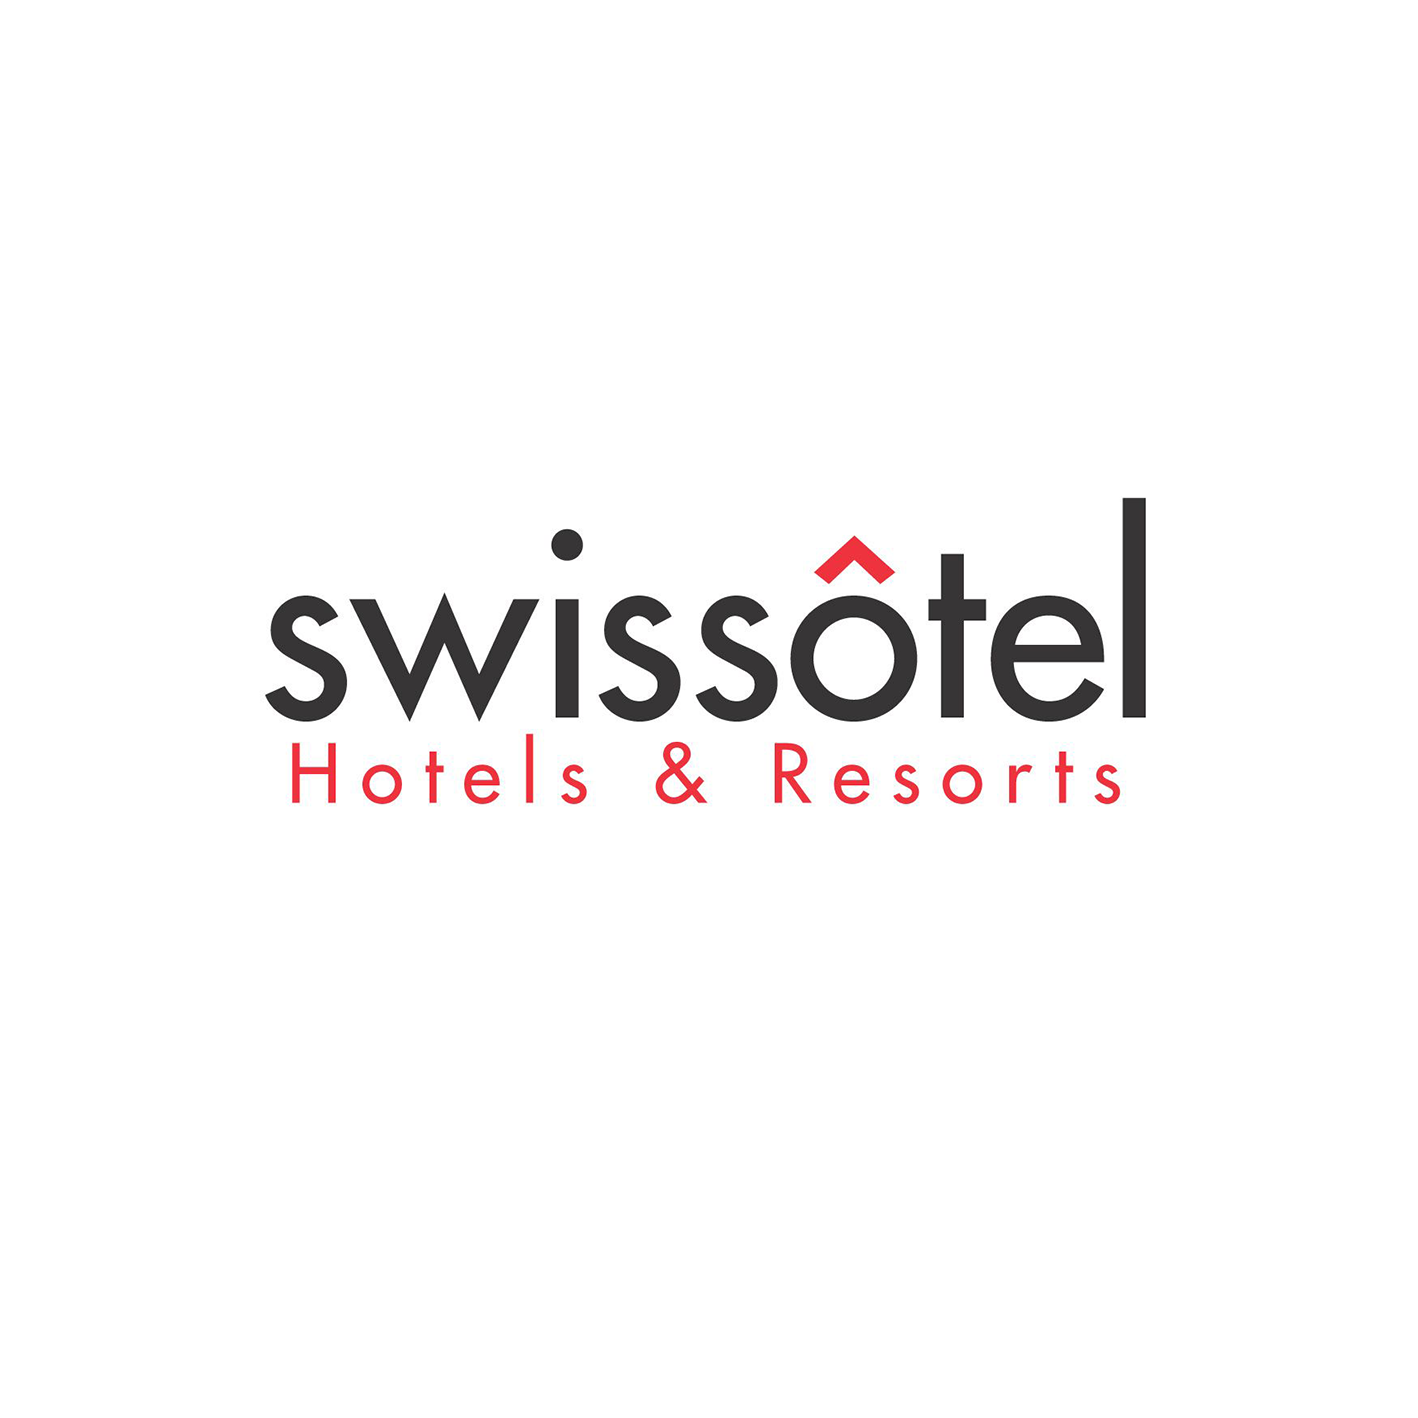 Swissotels Hotels & Resorts.png